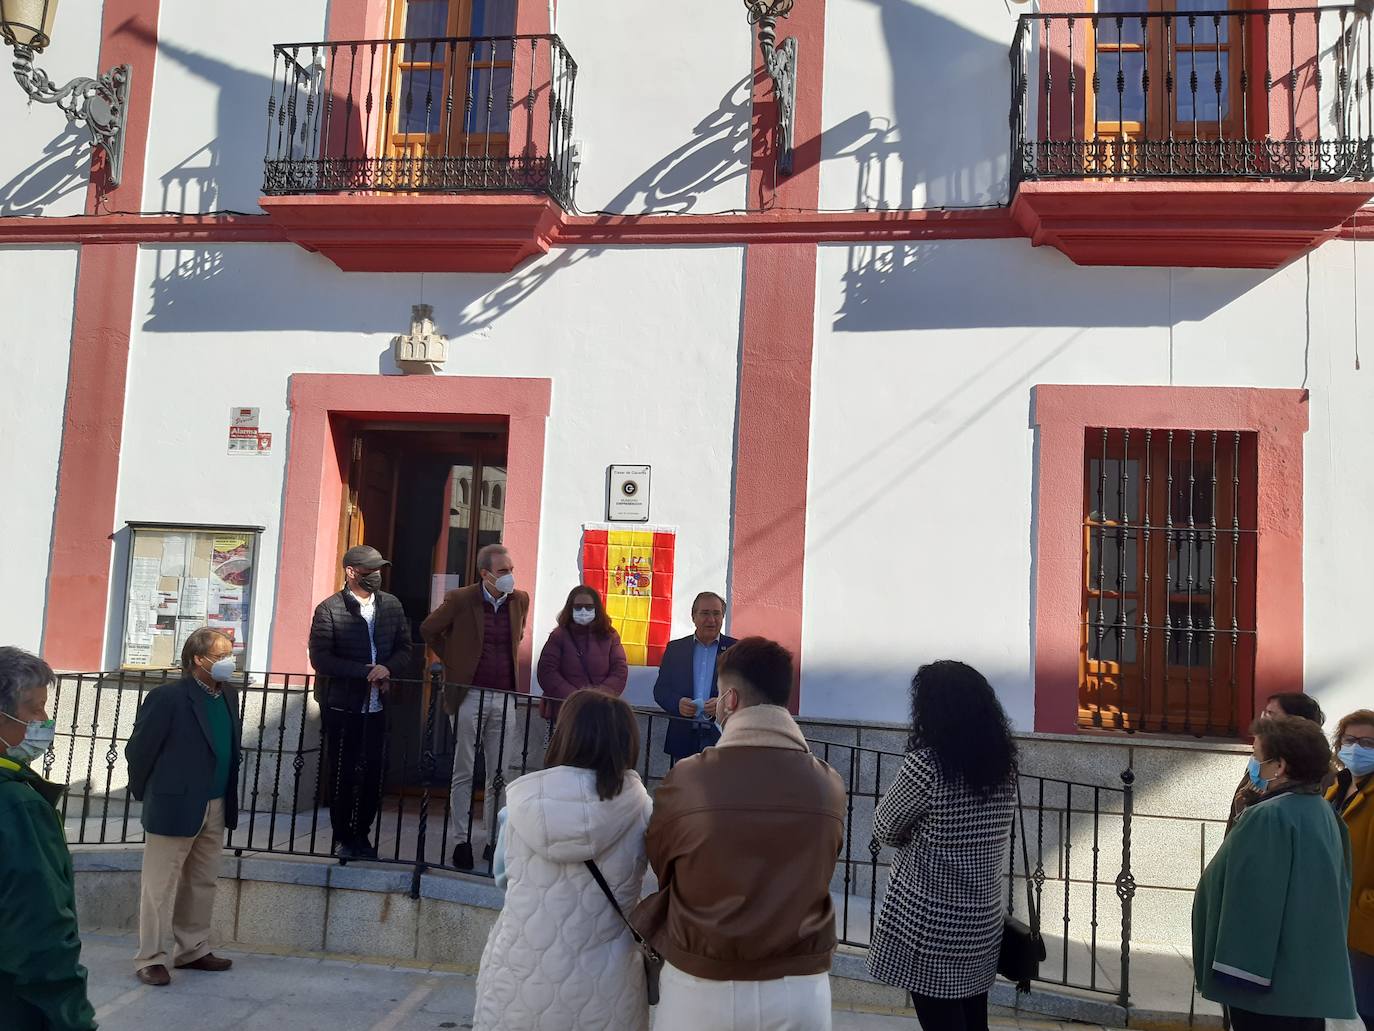 Imagen secundaria 1 - Casar de Cáceres descubre su placa del Premio Comunidad Sostenible